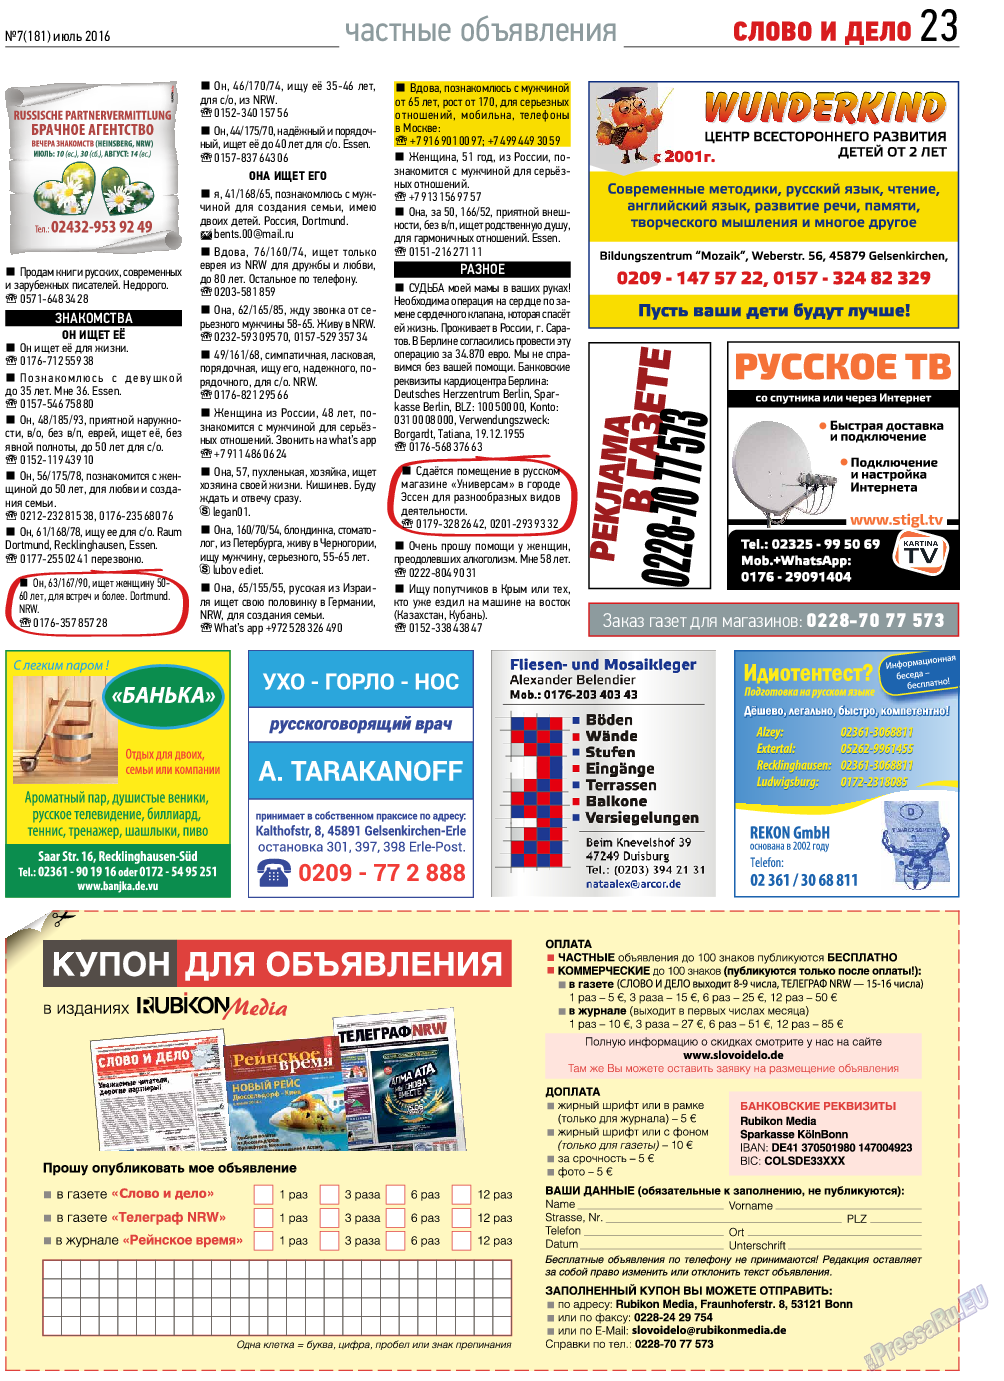 Слово и дело, газета. 2016 №7 стр.23